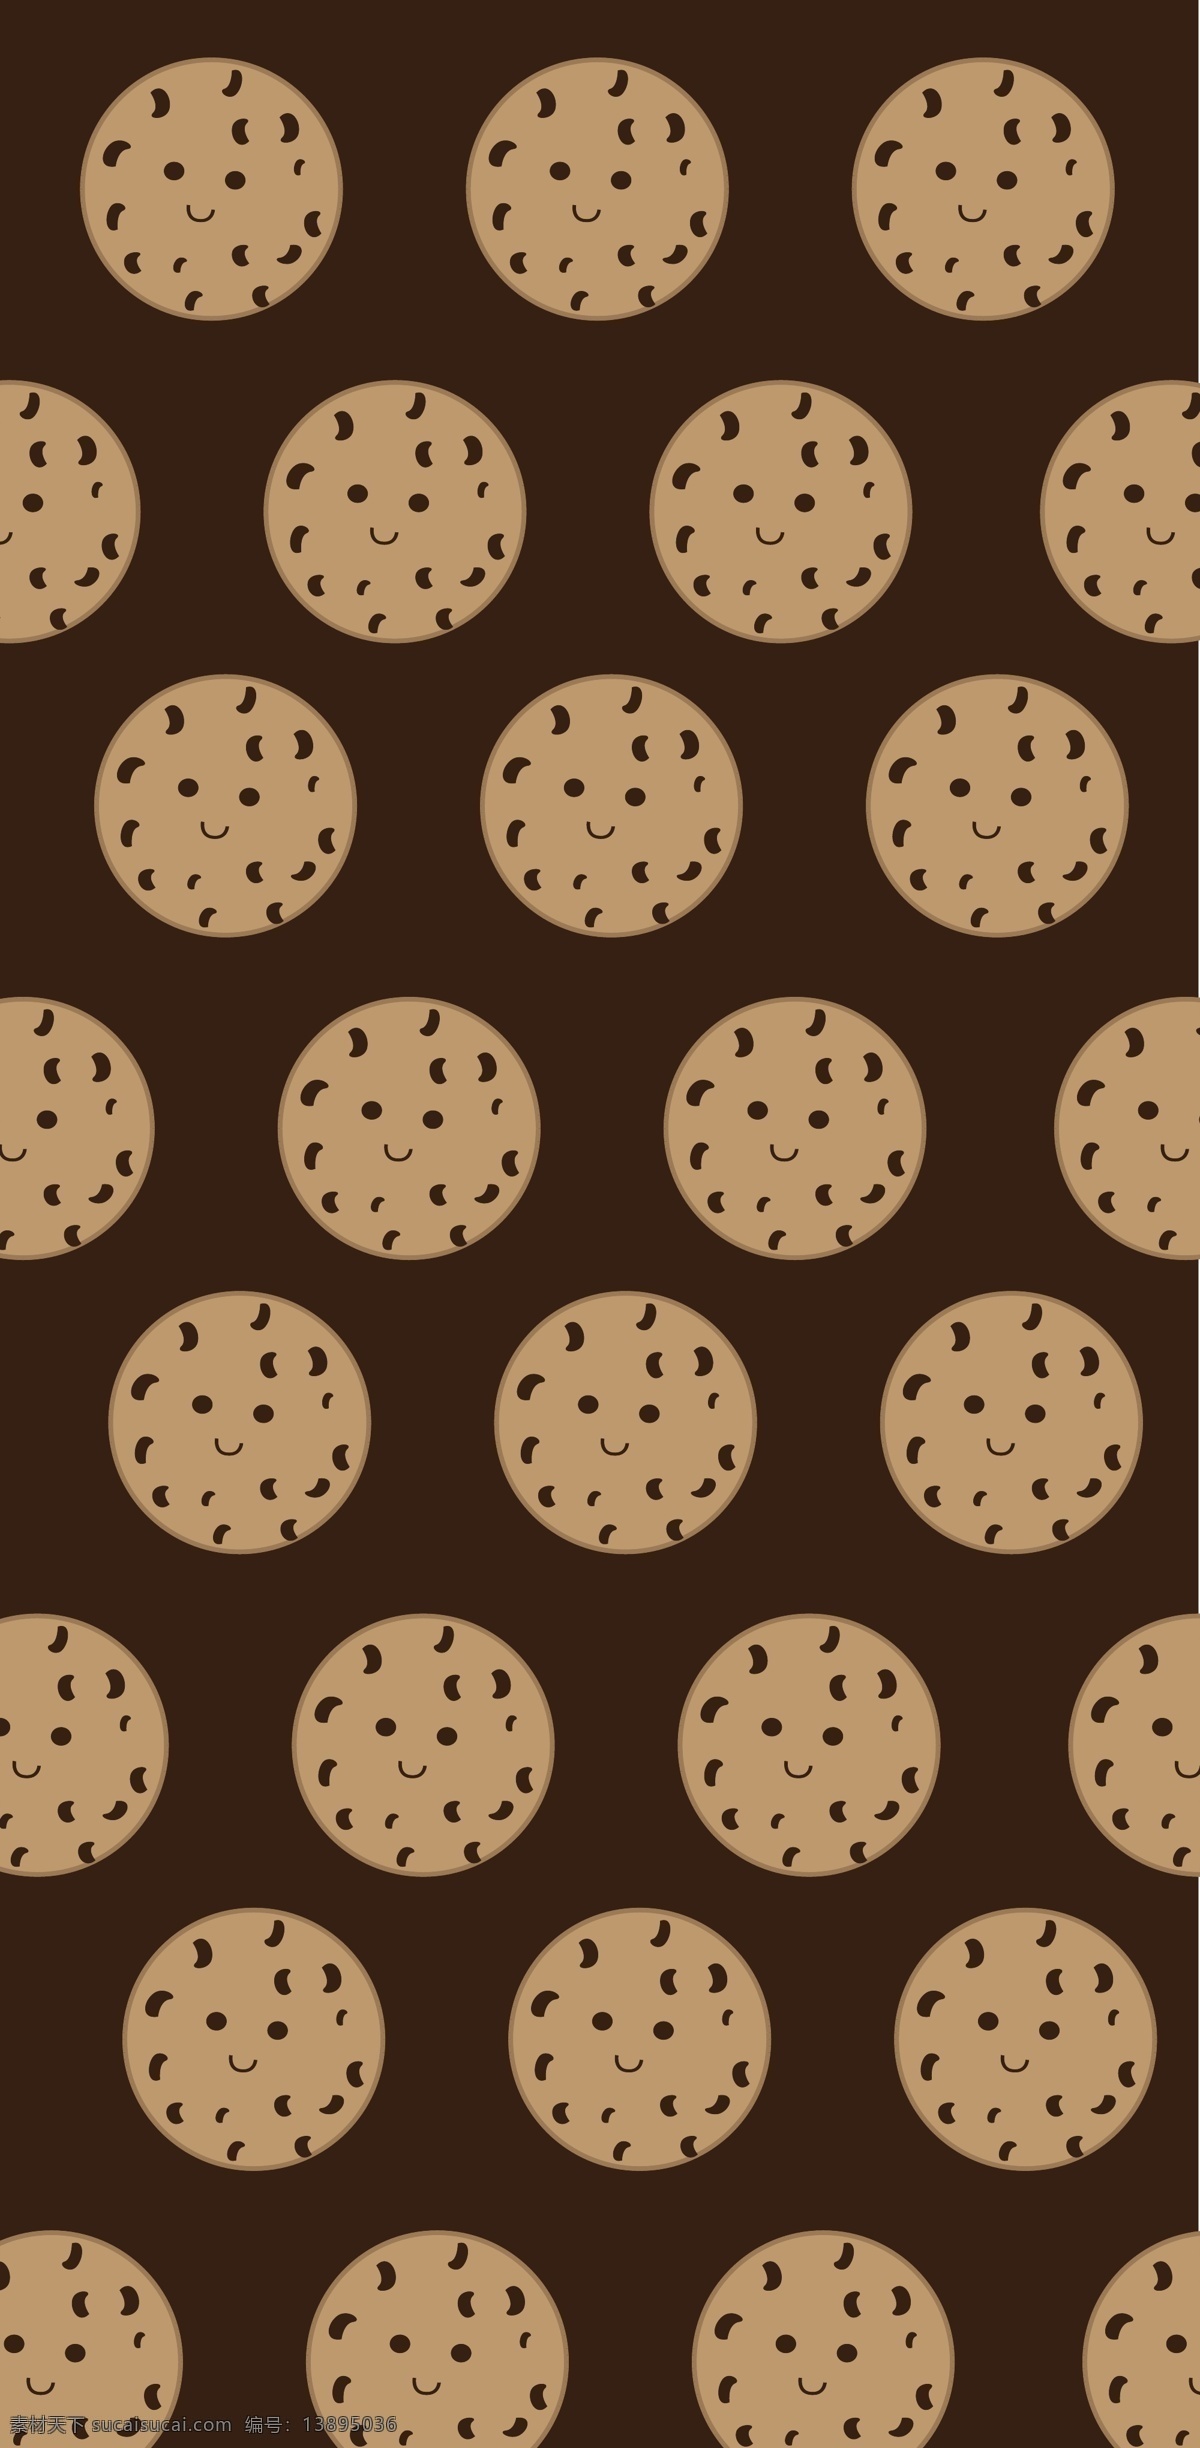 原创 平铺 抽象 拟人 曲奇 饼干 手机壳 儿童包装 平铺排列 拟人化 曲奇饼干 咖色 巧克力背景 电子机械包装